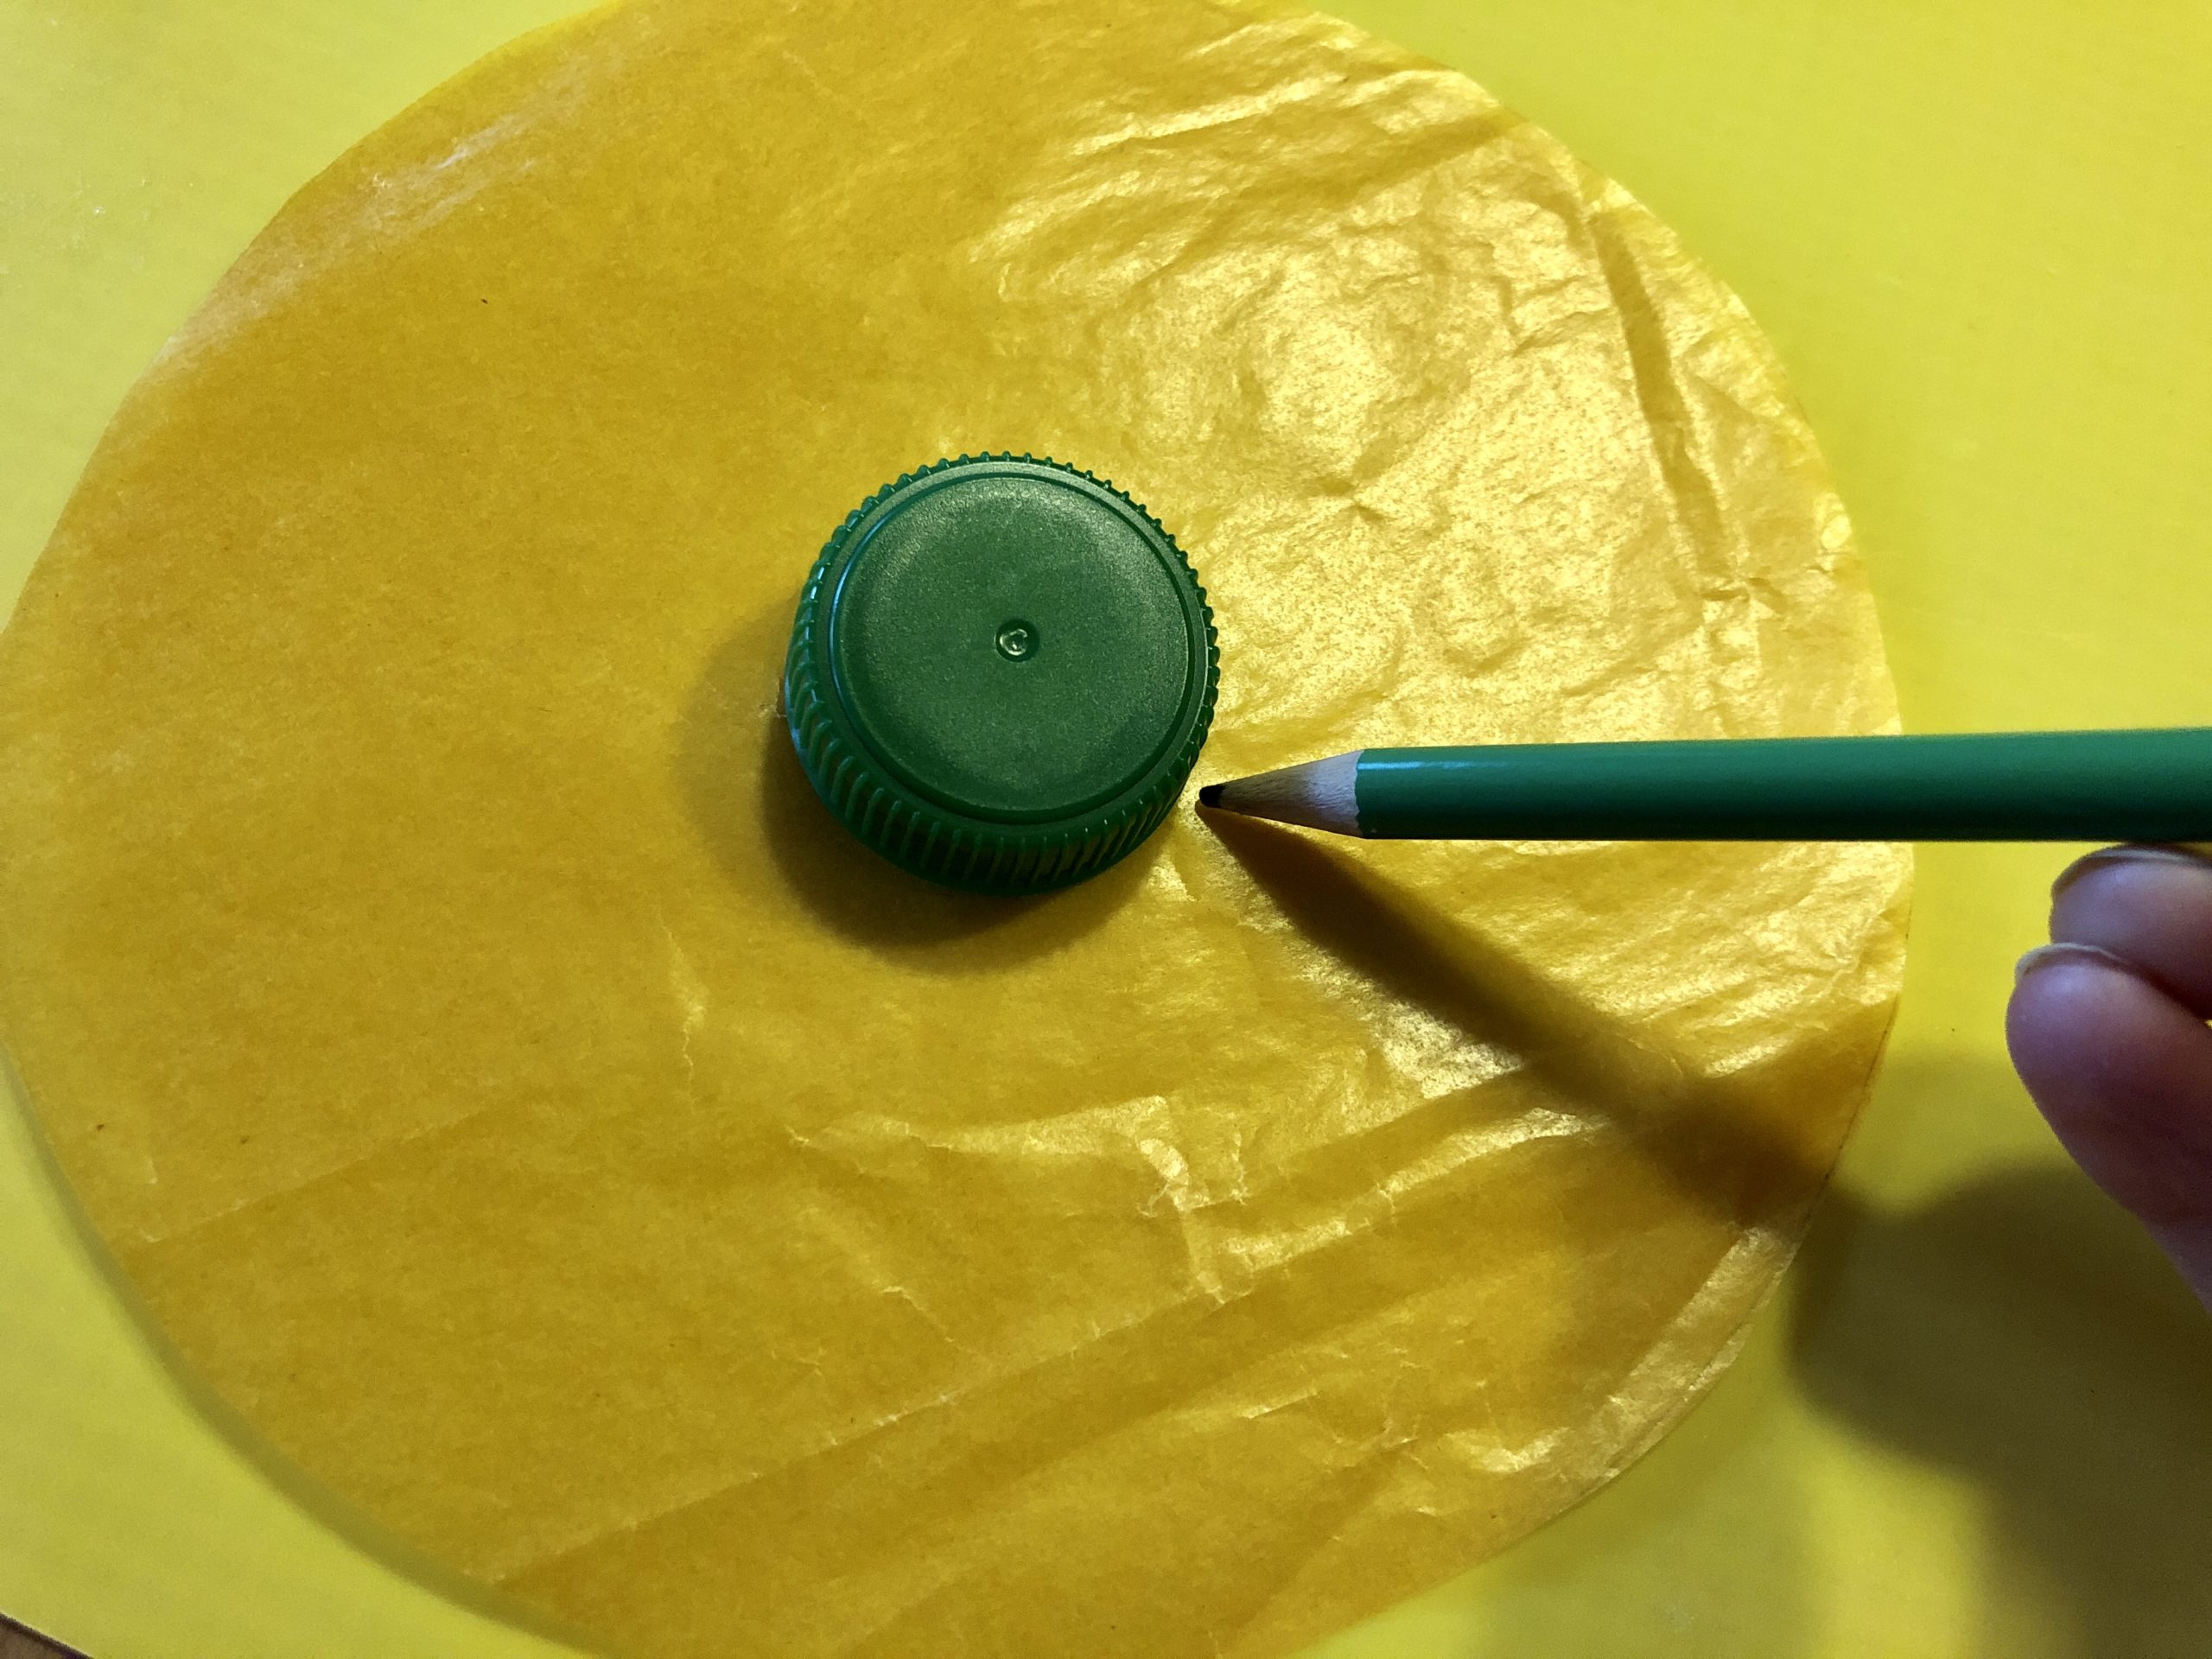 Bild zum Schritt 4 für die Kinder-Beschäftigung: 'Schneidet einen Kreis aus gelben Transparentpapier mit einem Durchmesser von...'